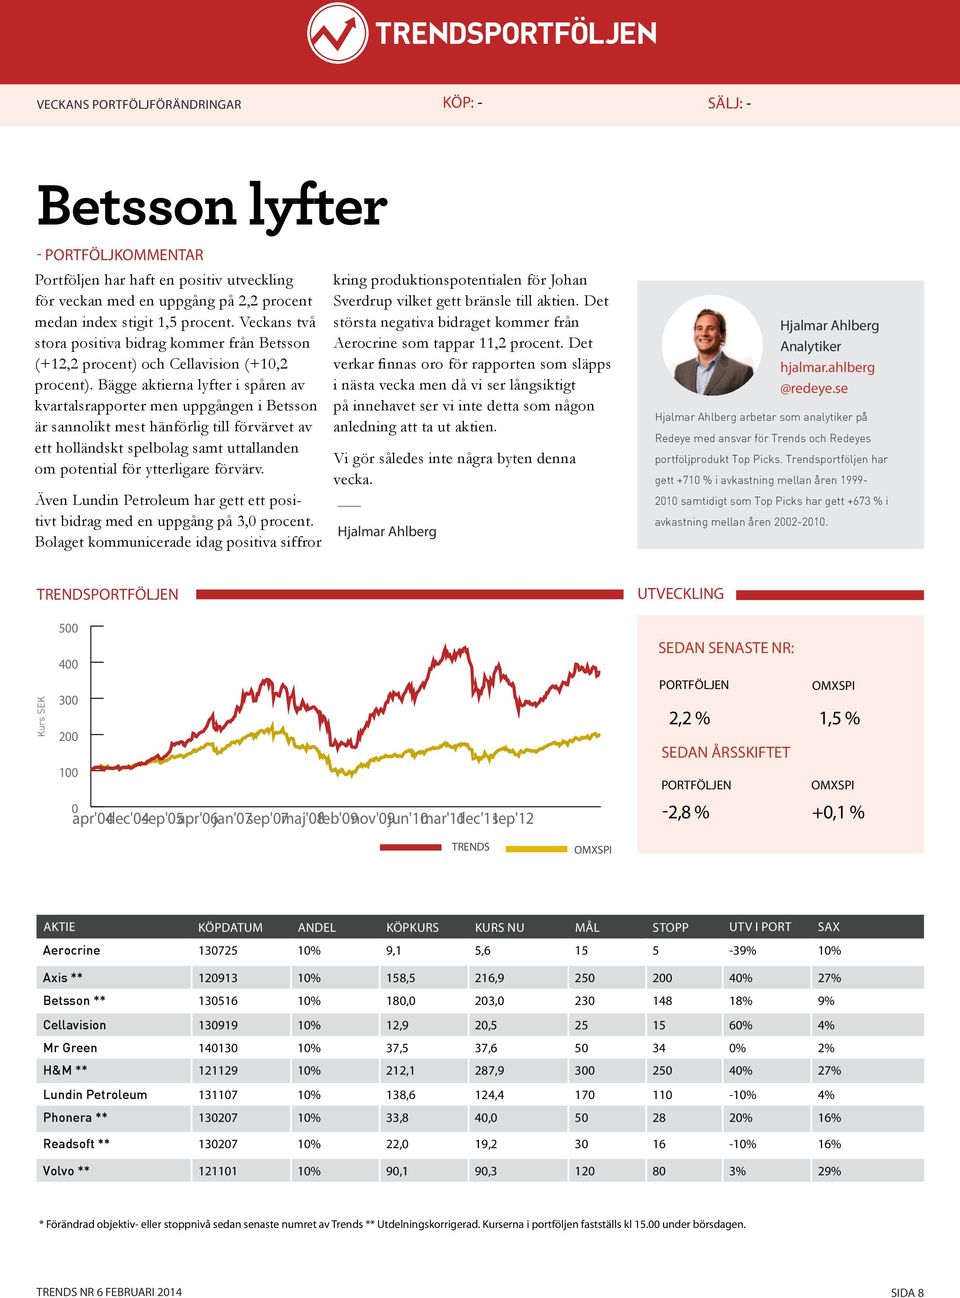 Bägge aktierna lyfter i spåren av kvartalsrapporter men uppgången i Betsson är sannolikt mest hänförlig till förvärvet av ett holländskt spelbolag samt uttallanden om potential för ytterligare